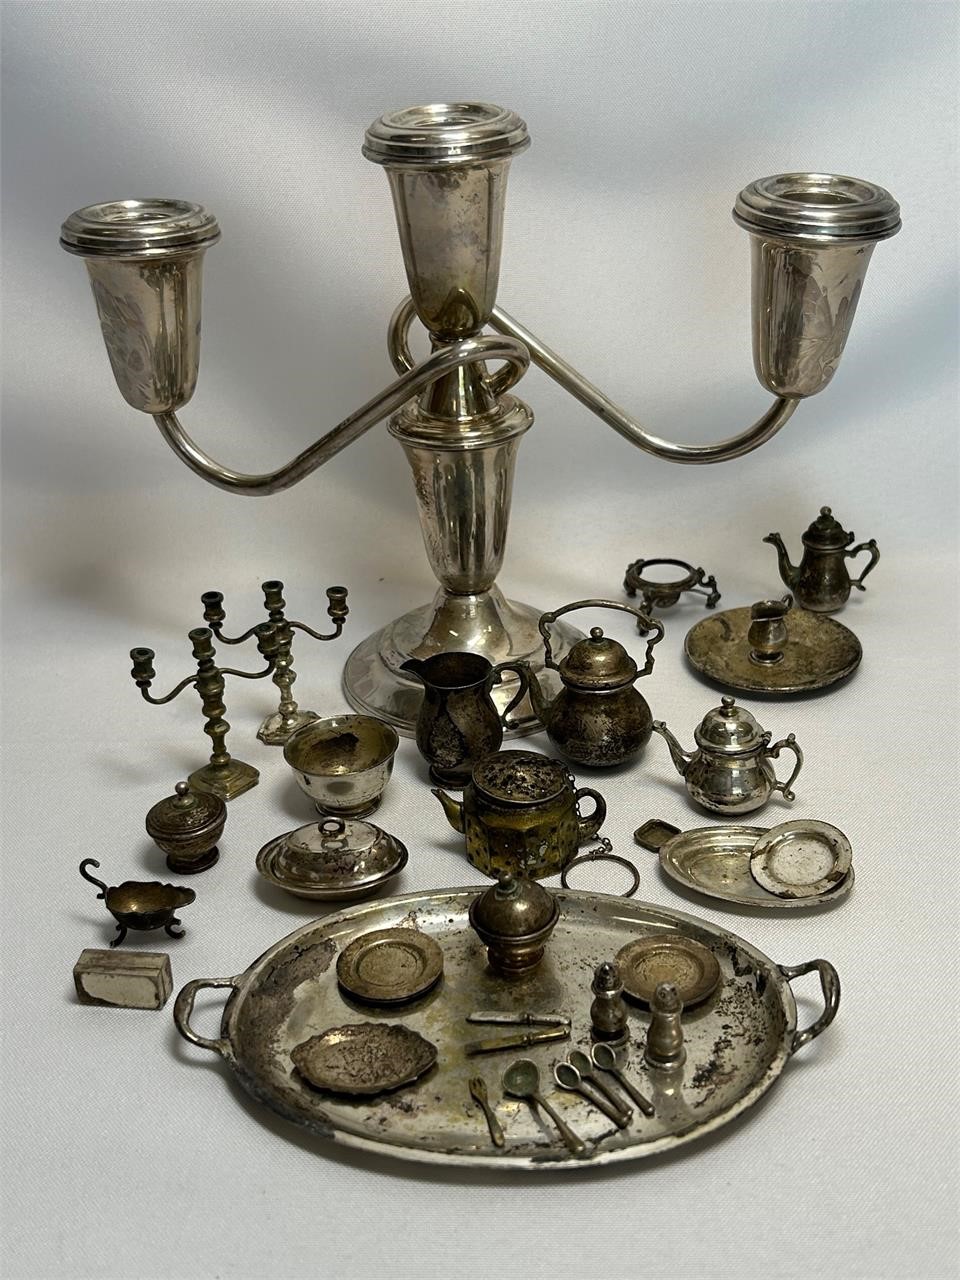 Miniature Sterling Silver Tea Set & Serving Pieces